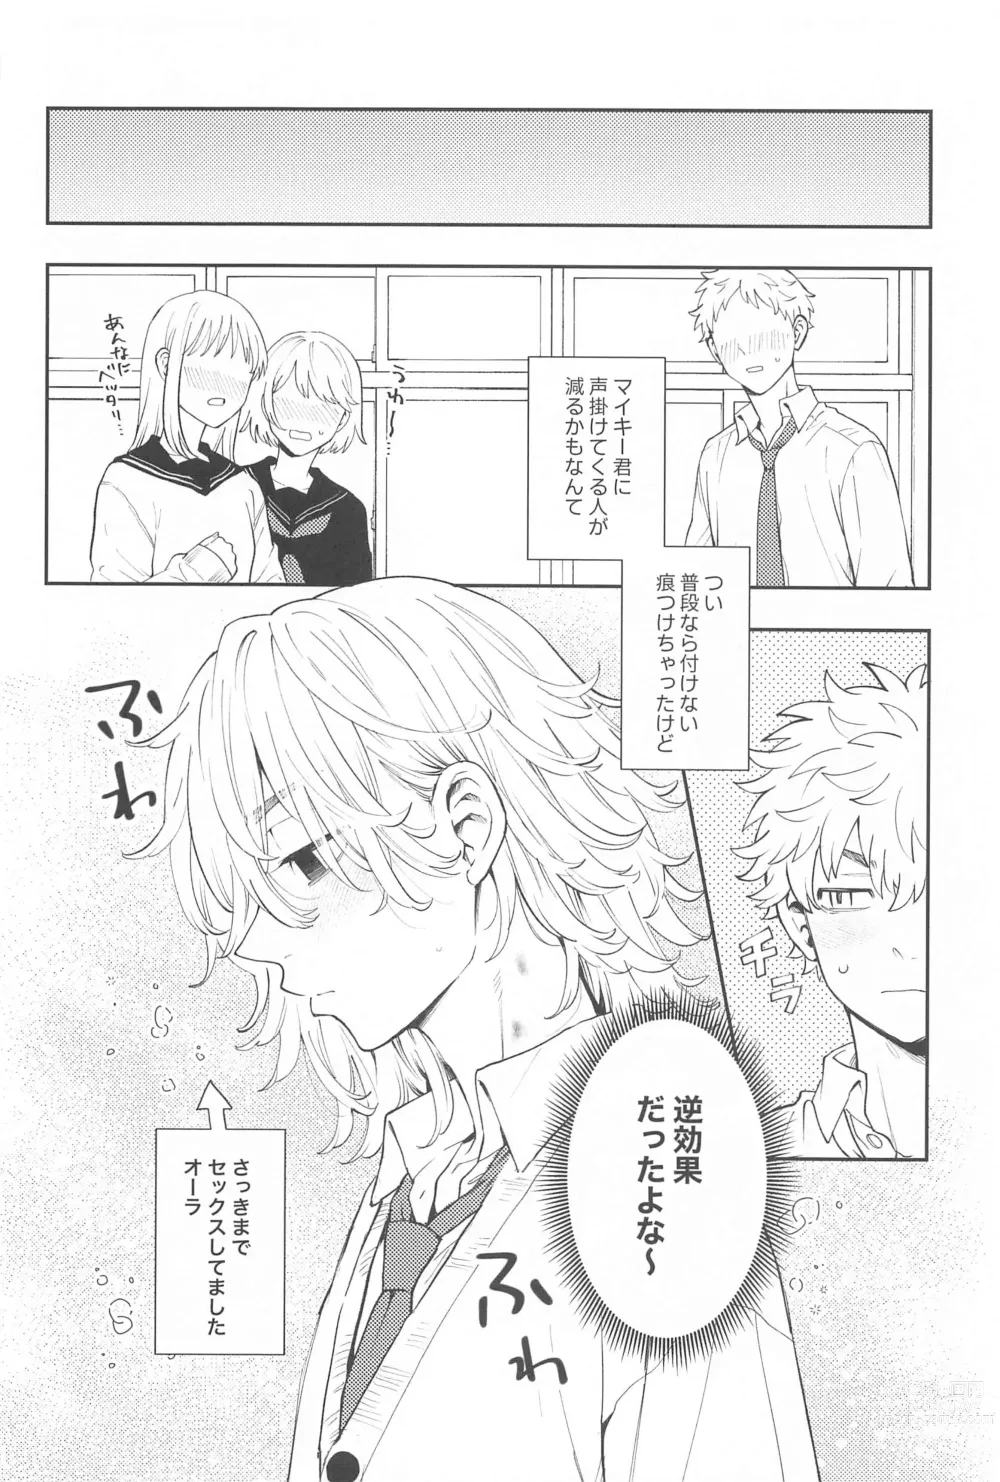 Page 29 of doujinshi Kyou wa Osoroi de!